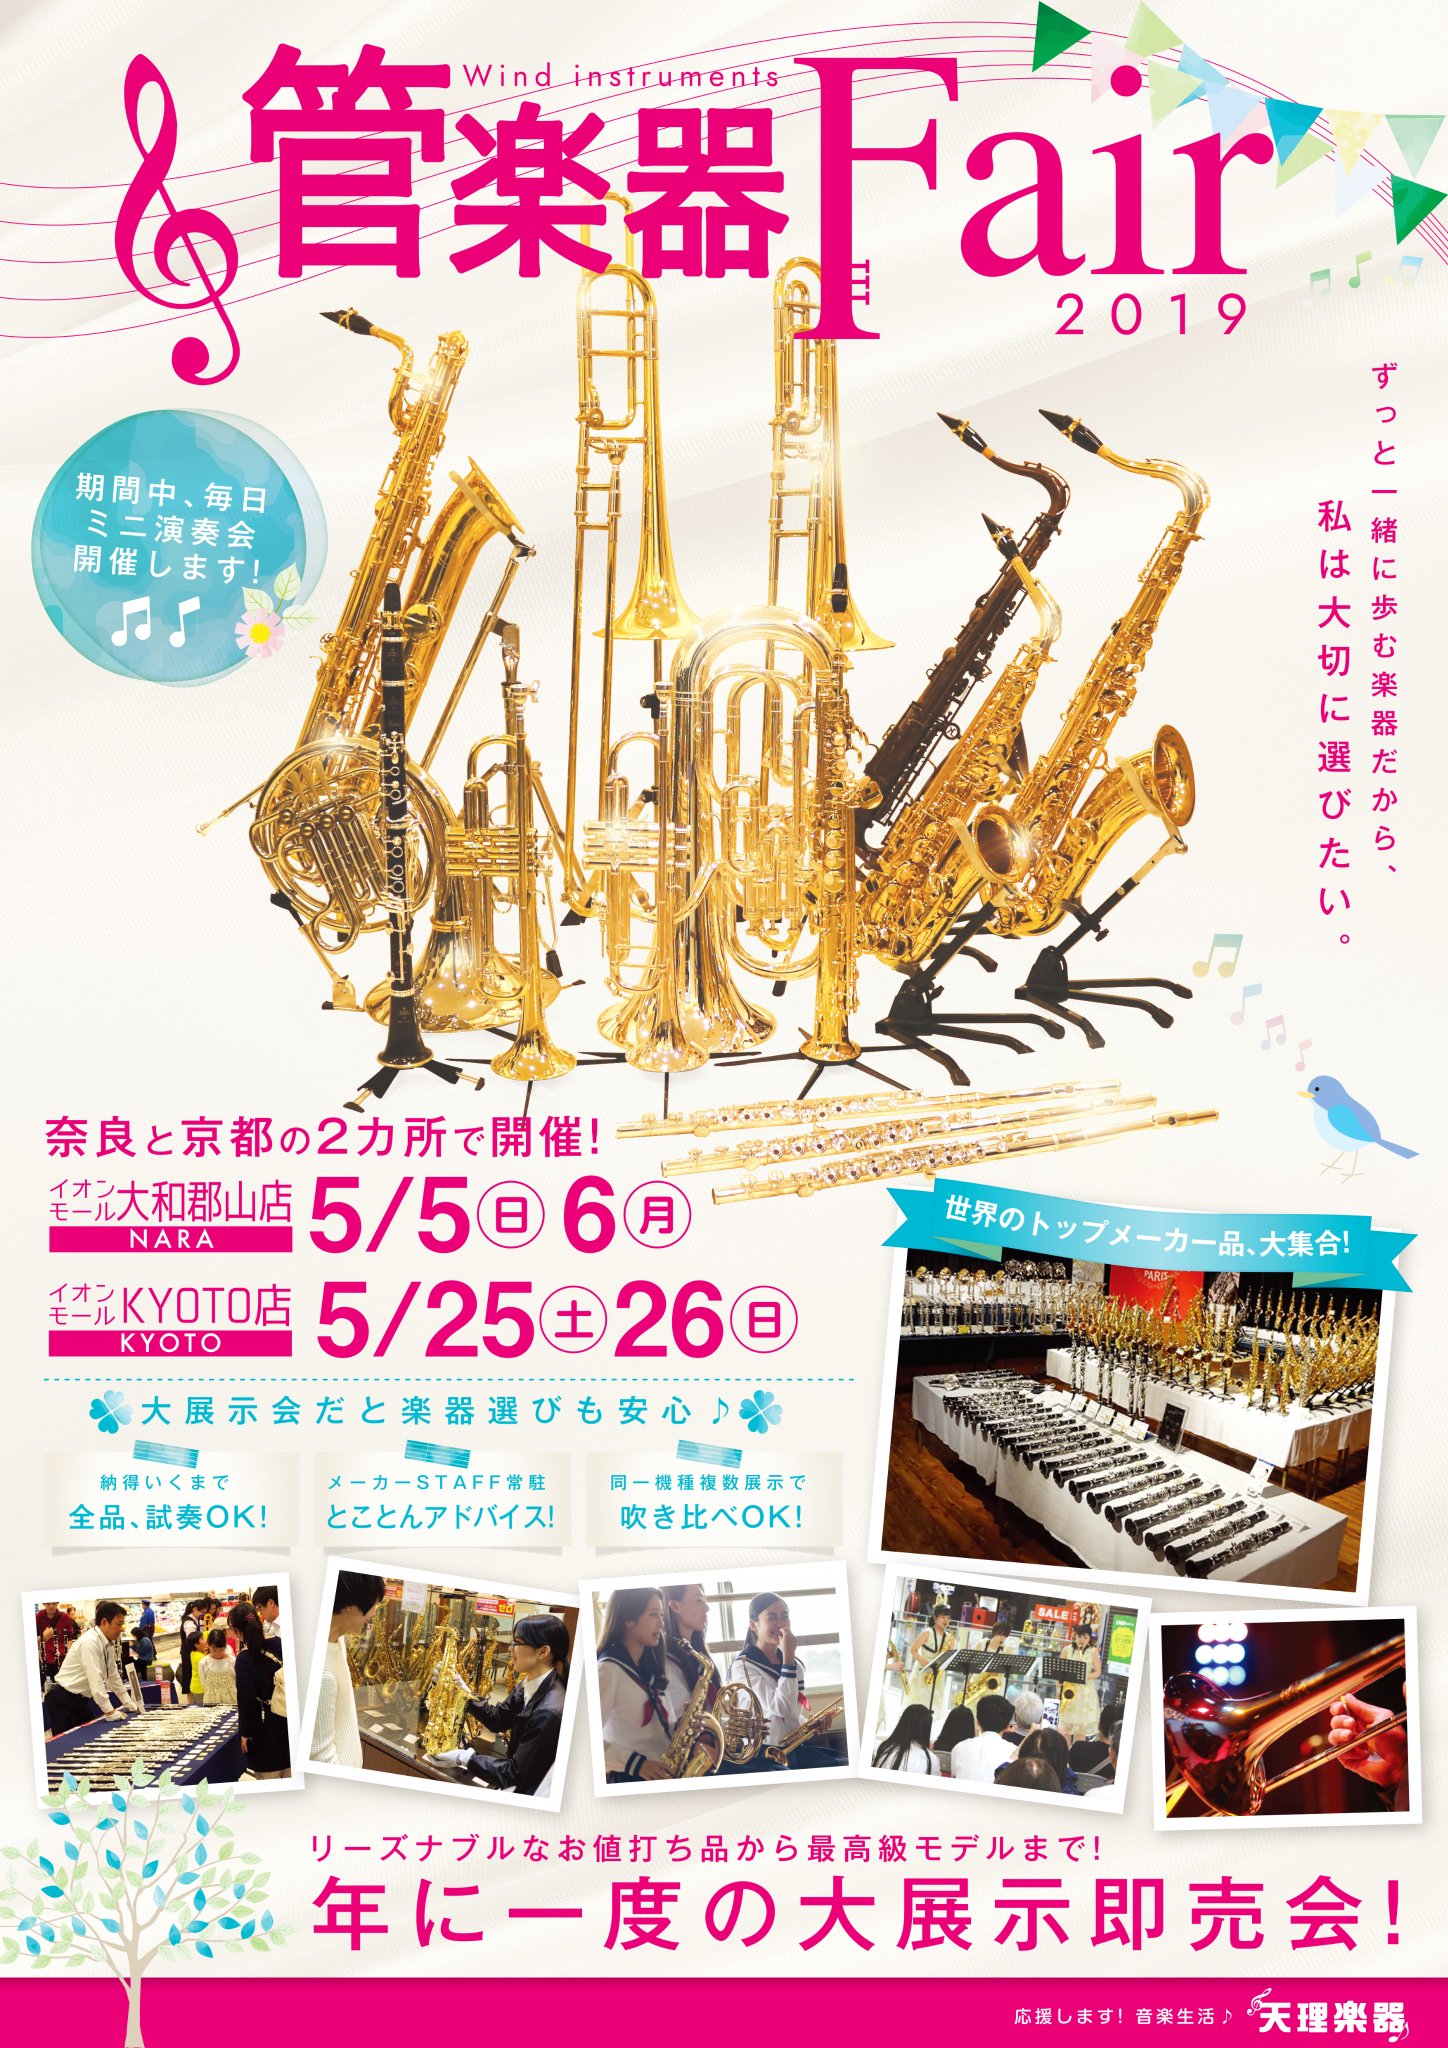 2019年、イベント、奈良県、大和郡山市、参加型イベント、体験、5月、管楽器フェア、天理楽器。